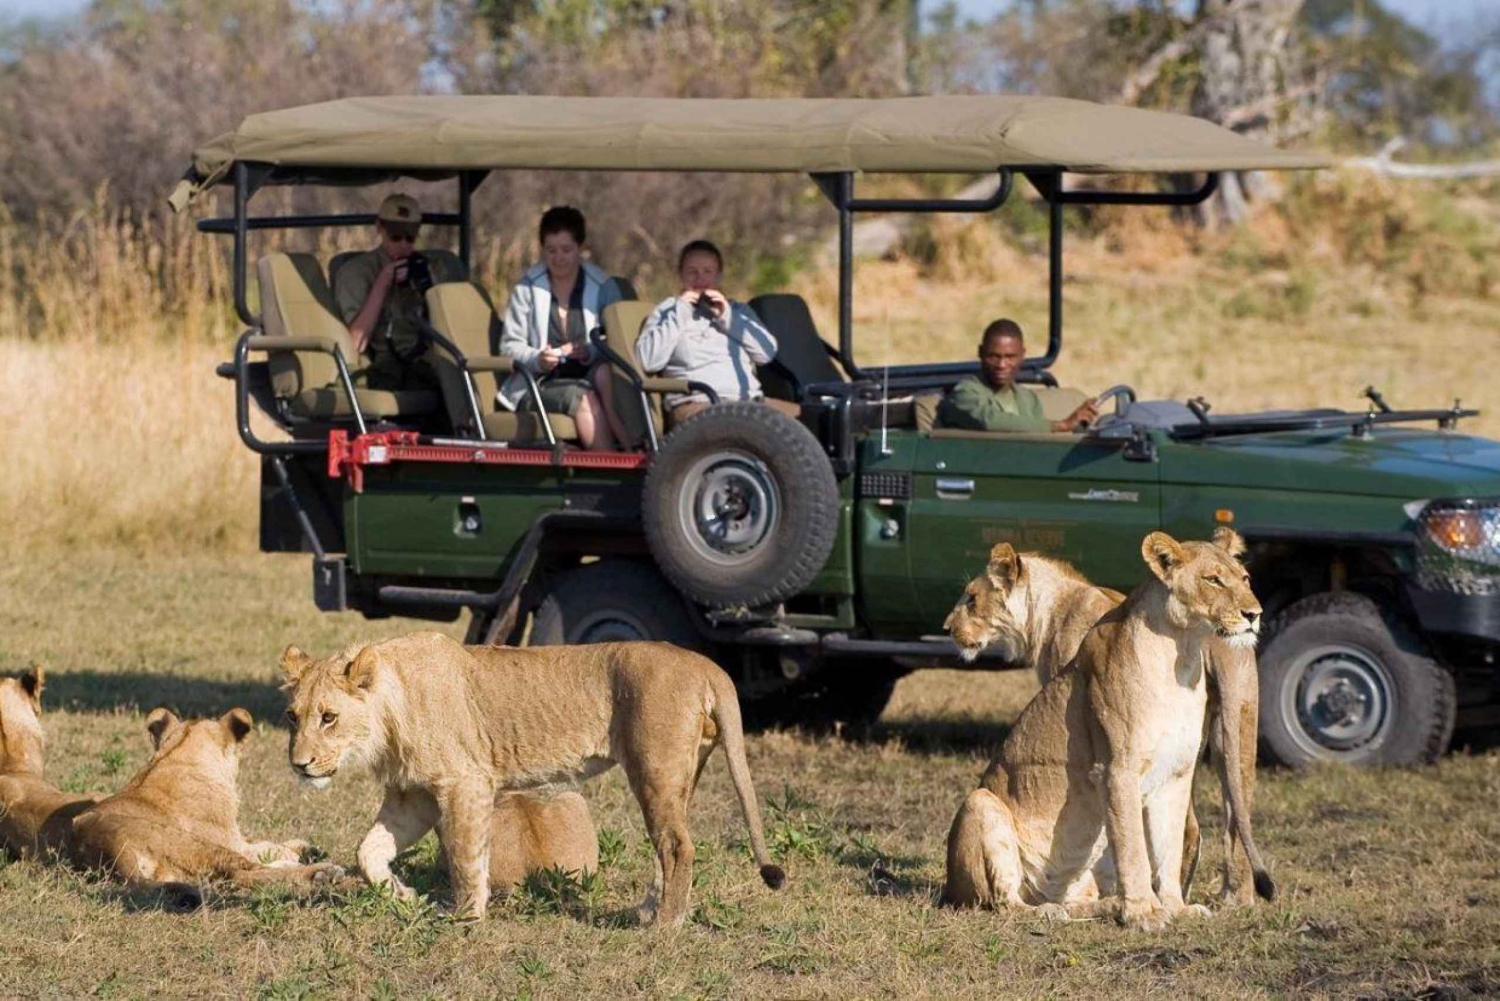 Safári particular de 4 dias no Parque Nacional Kruger saindo de Joanesburgo